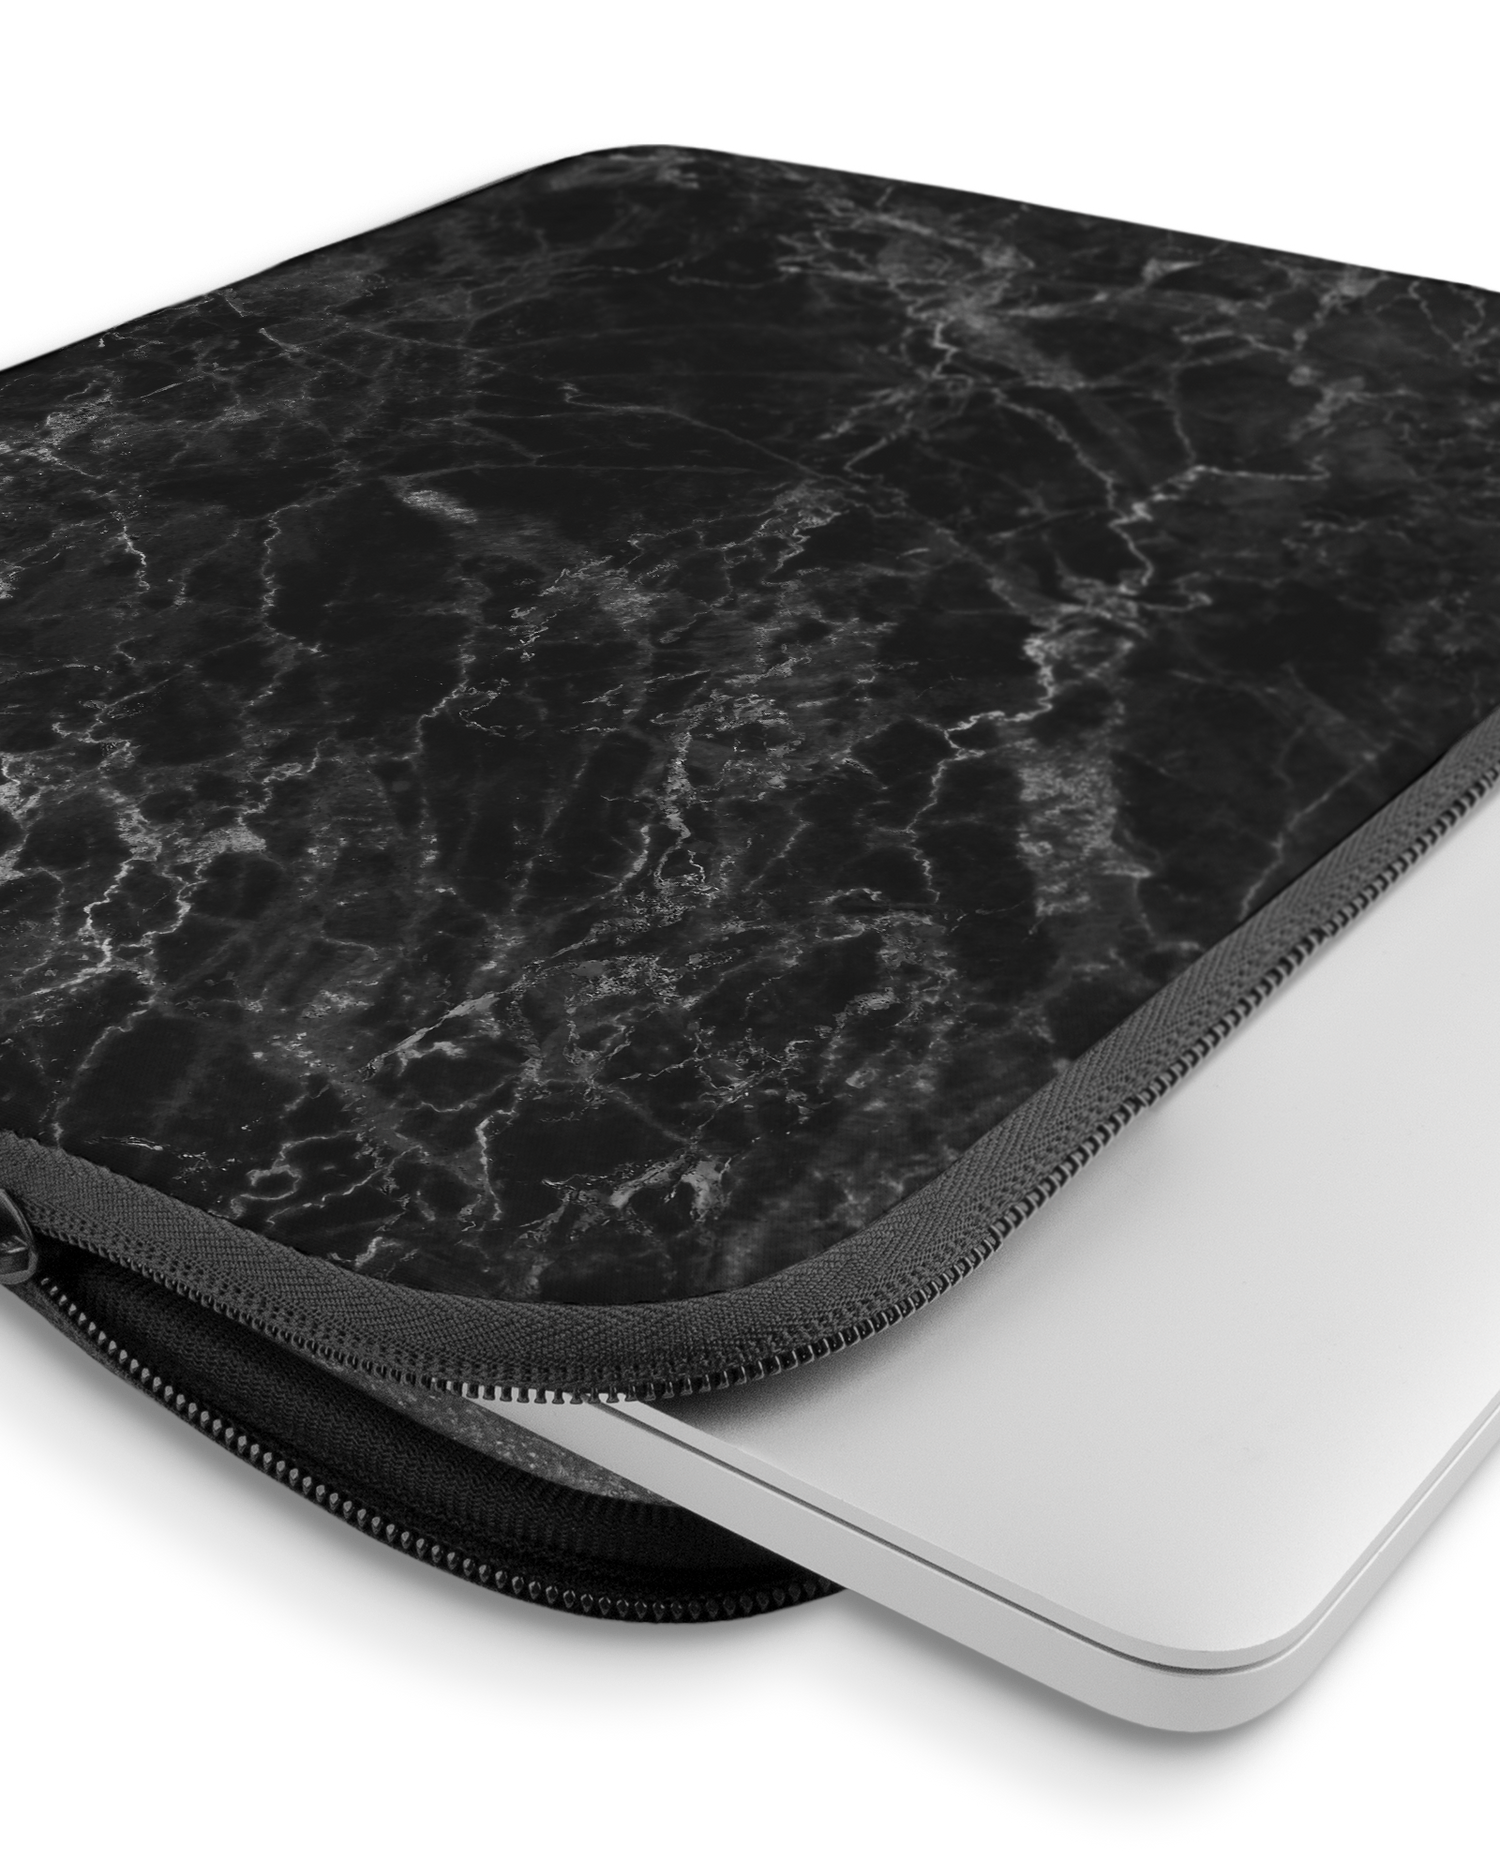 Midnight Marble Laptophülle 15 Zoll mit Gerät im Inneren